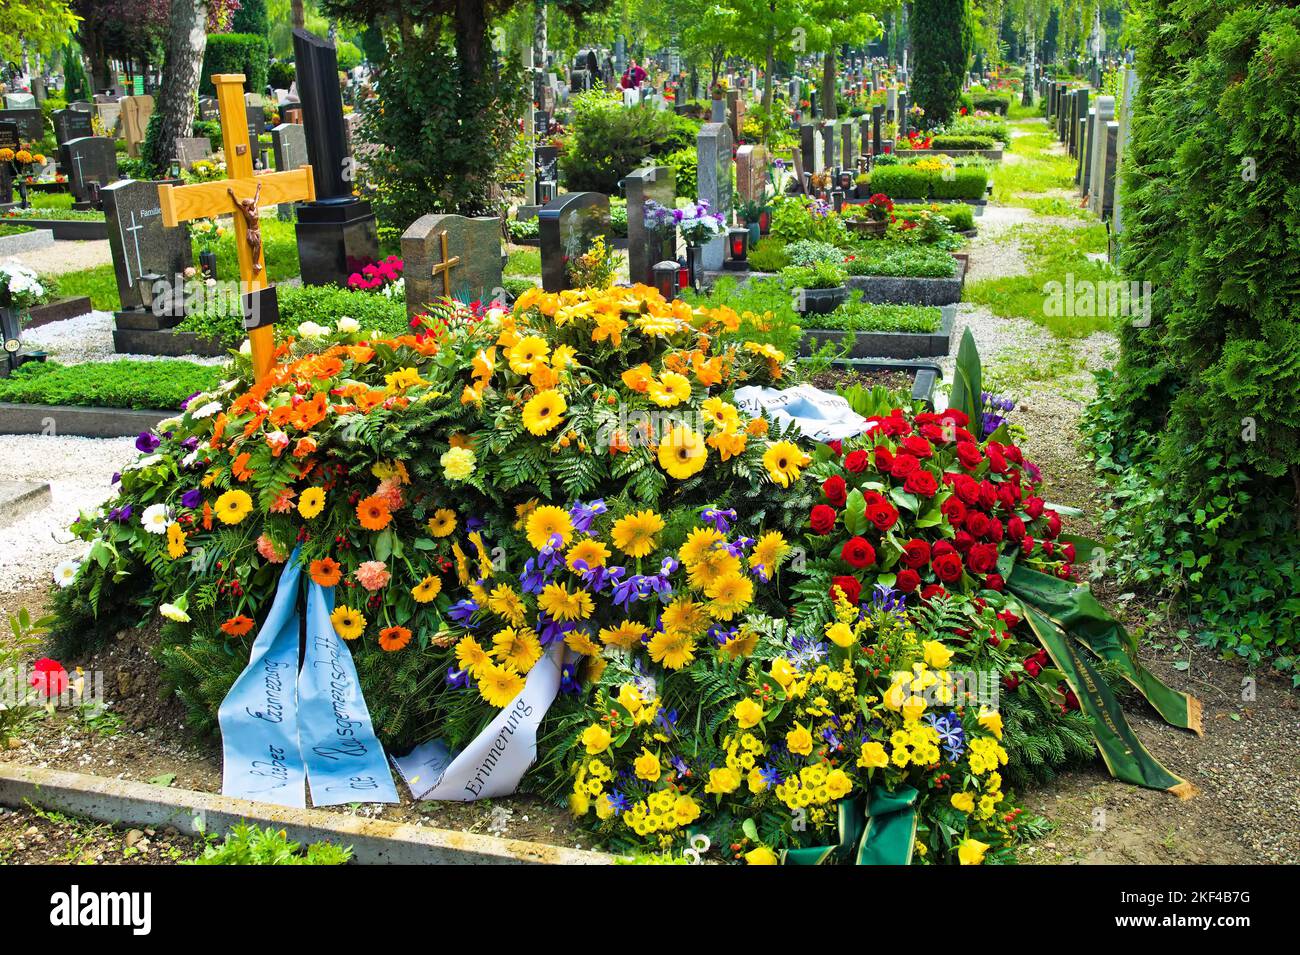 Auf einem Friedhof befindet sich ein frisches Grab nach einem Begräbnis, Kreuz, Blumen, Trauergestecke, Stock Photo